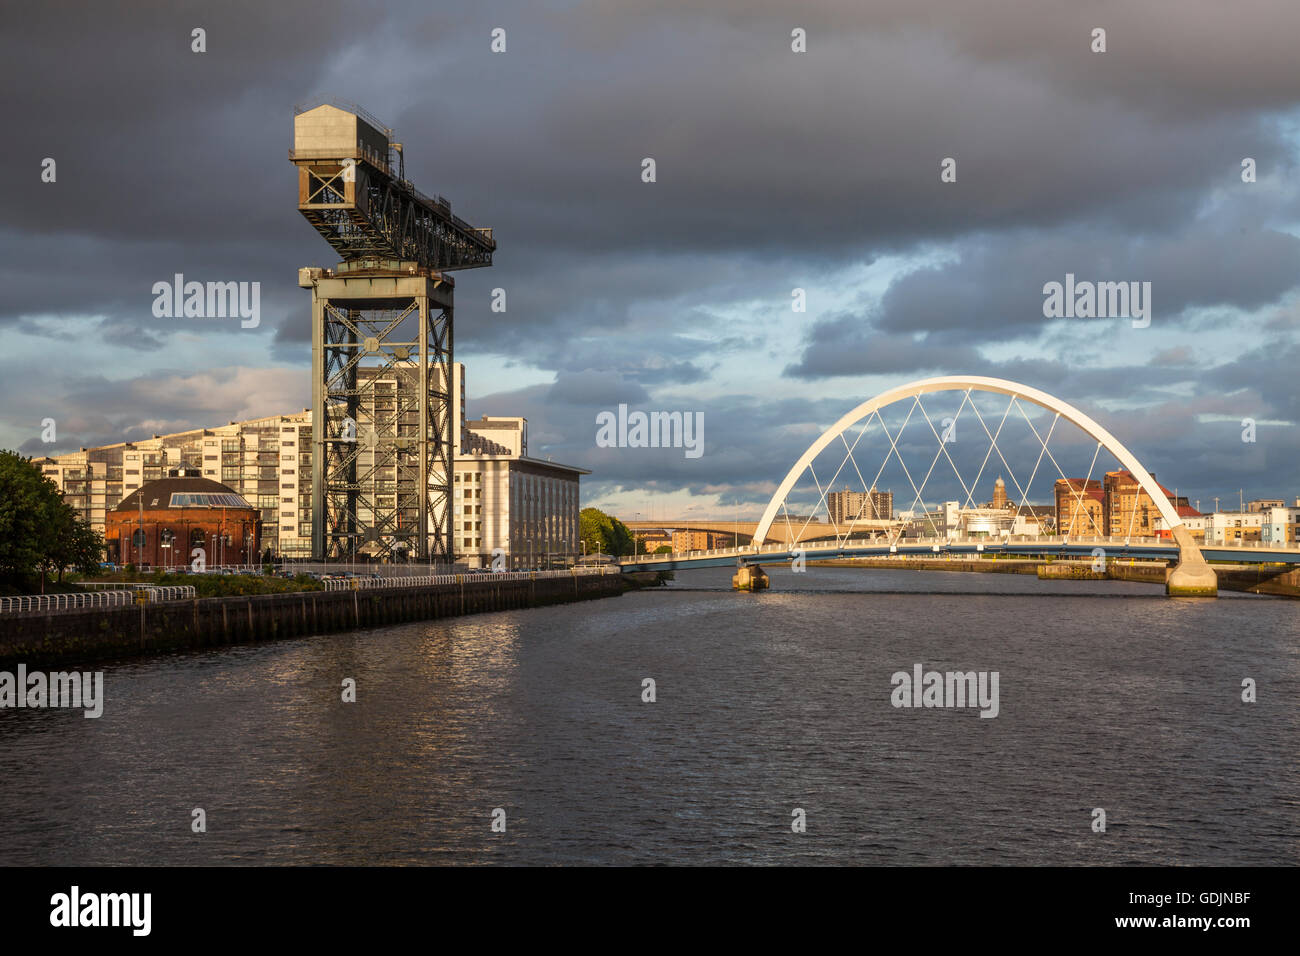 Au cours de la rivière Clyde Stormclouds à Glasgow. Sur la photo, le pont 'quinty' (Arc) et le Clyde Finnieston Crane. Banque D'Images